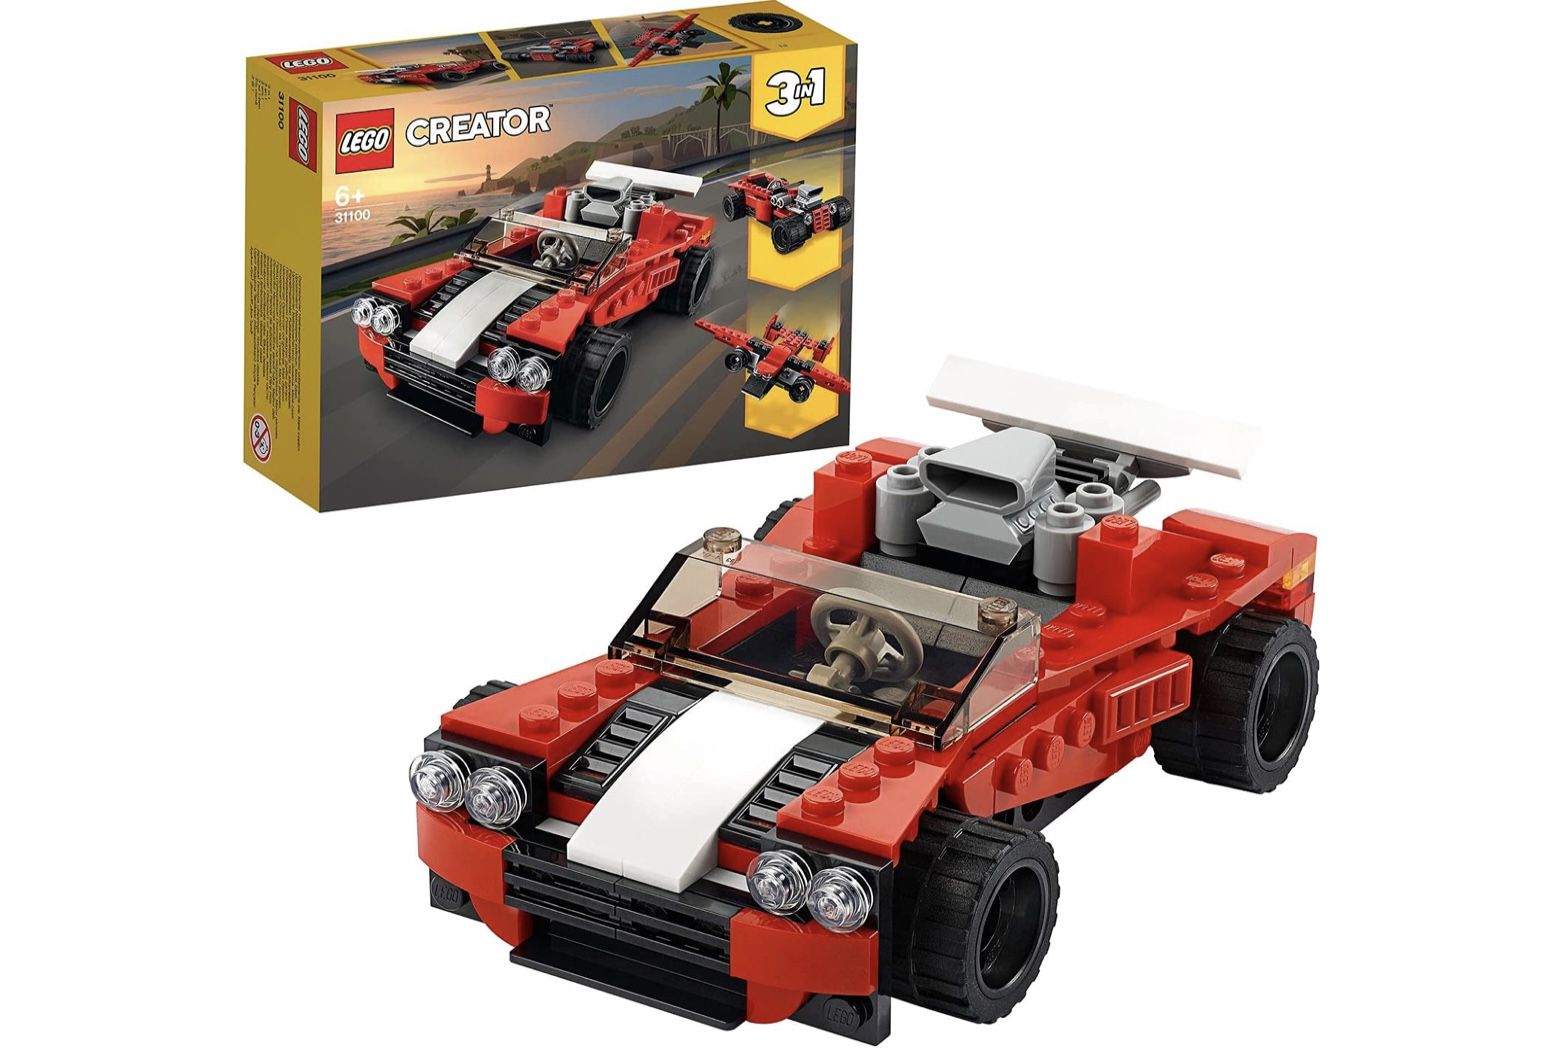 LEGO 31100 Creator 3 In 1 Sportwagen Spielzeug für 6,73€ (statt 10€)   Prime